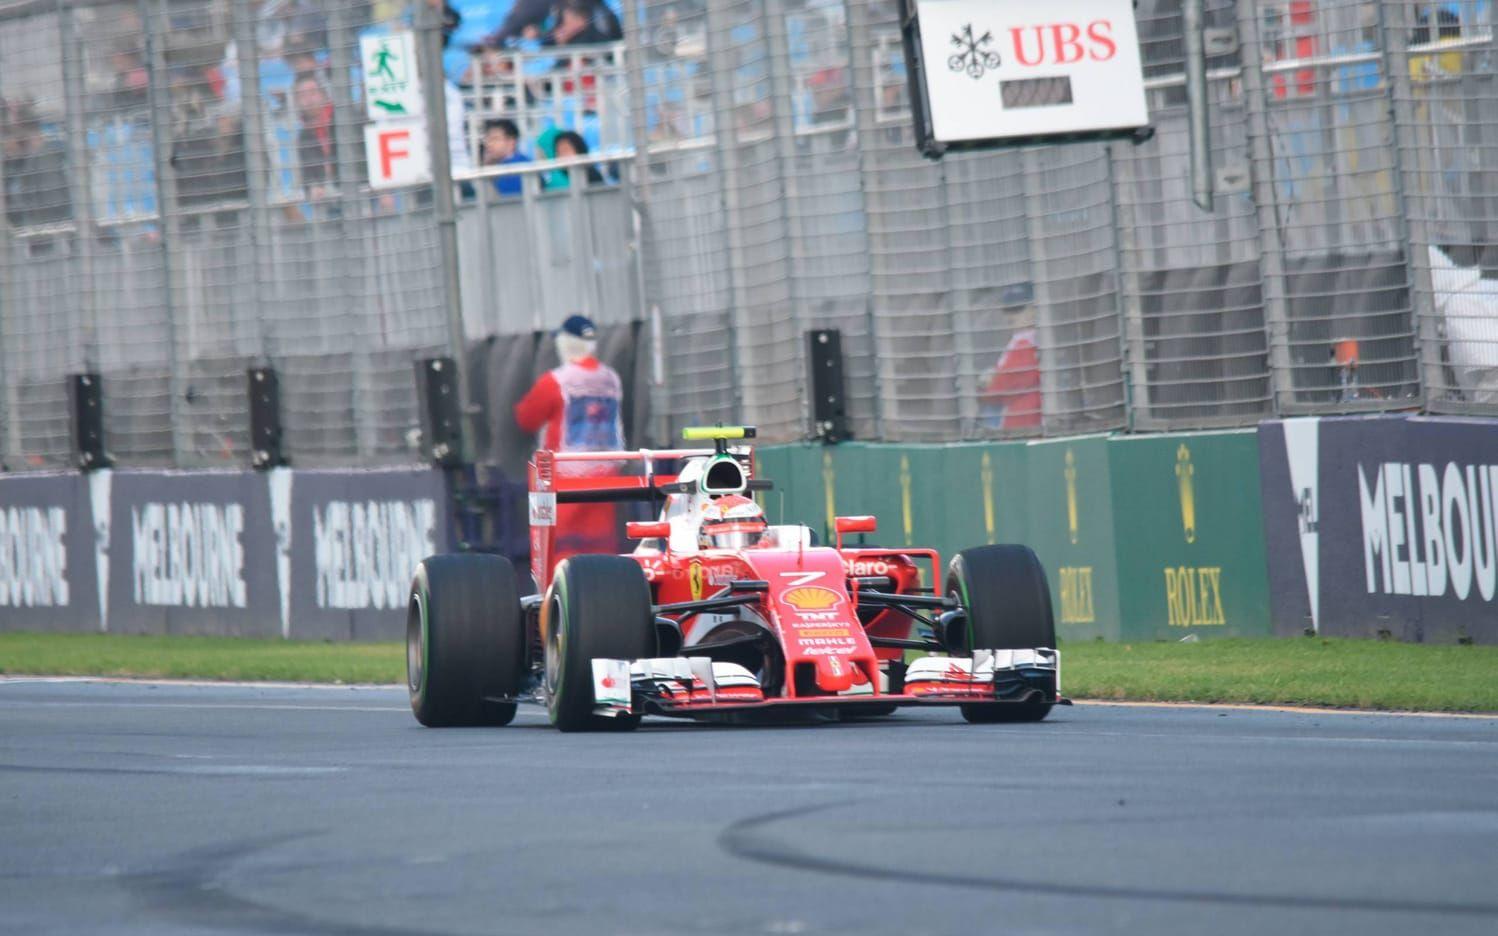 Finske Kimi Räikkönen var en av dem som tvingades bryta, men fick en ny chans efter avbrottet. Foto: TT/AP